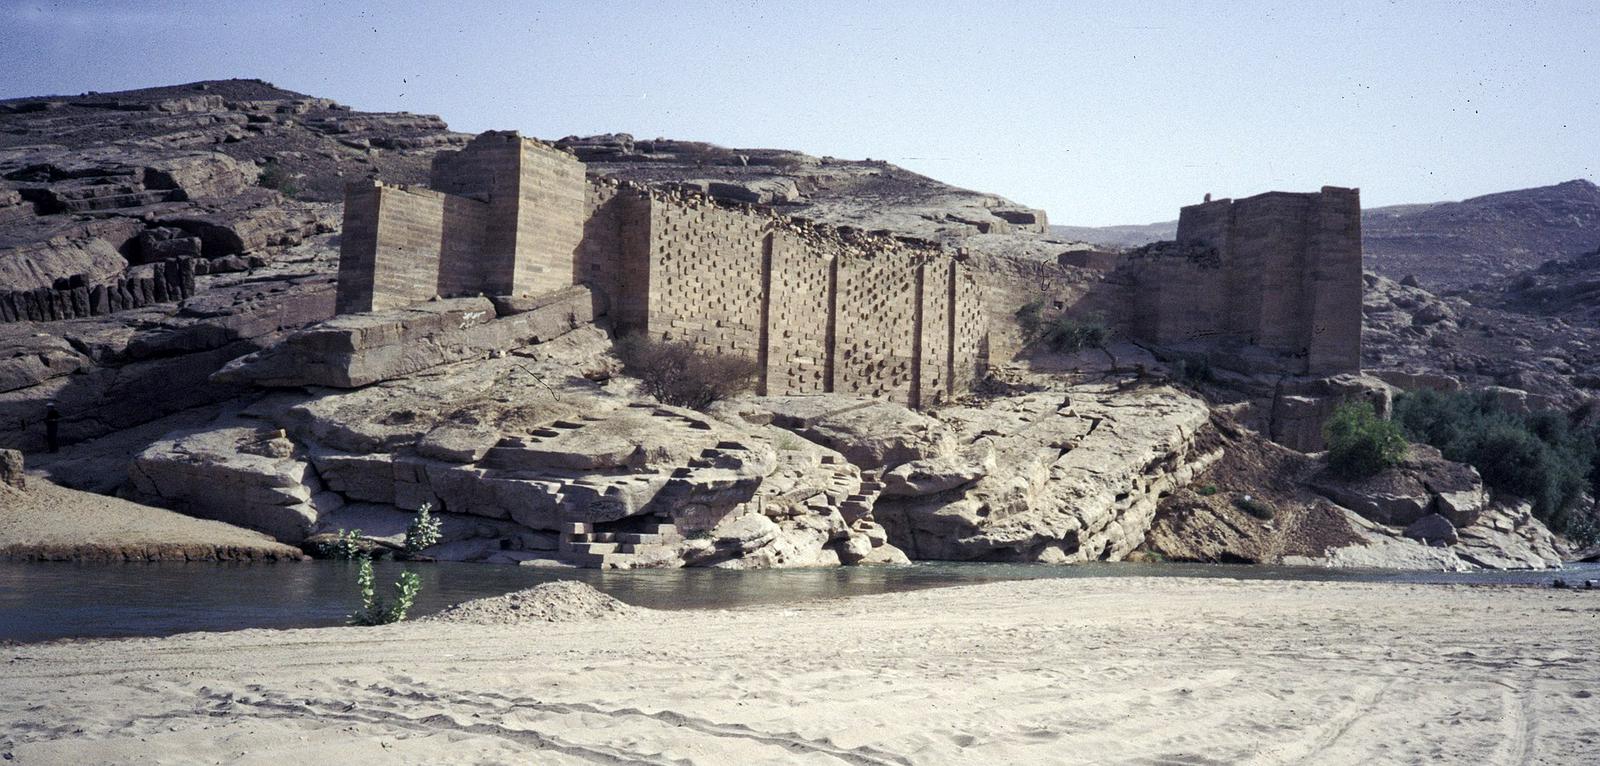 Jez v v Maribu je bil zgrajen v 8. stoletju pr. n. št. in je bil v uporabi več kot tisočletje. Foto: Wikipedia